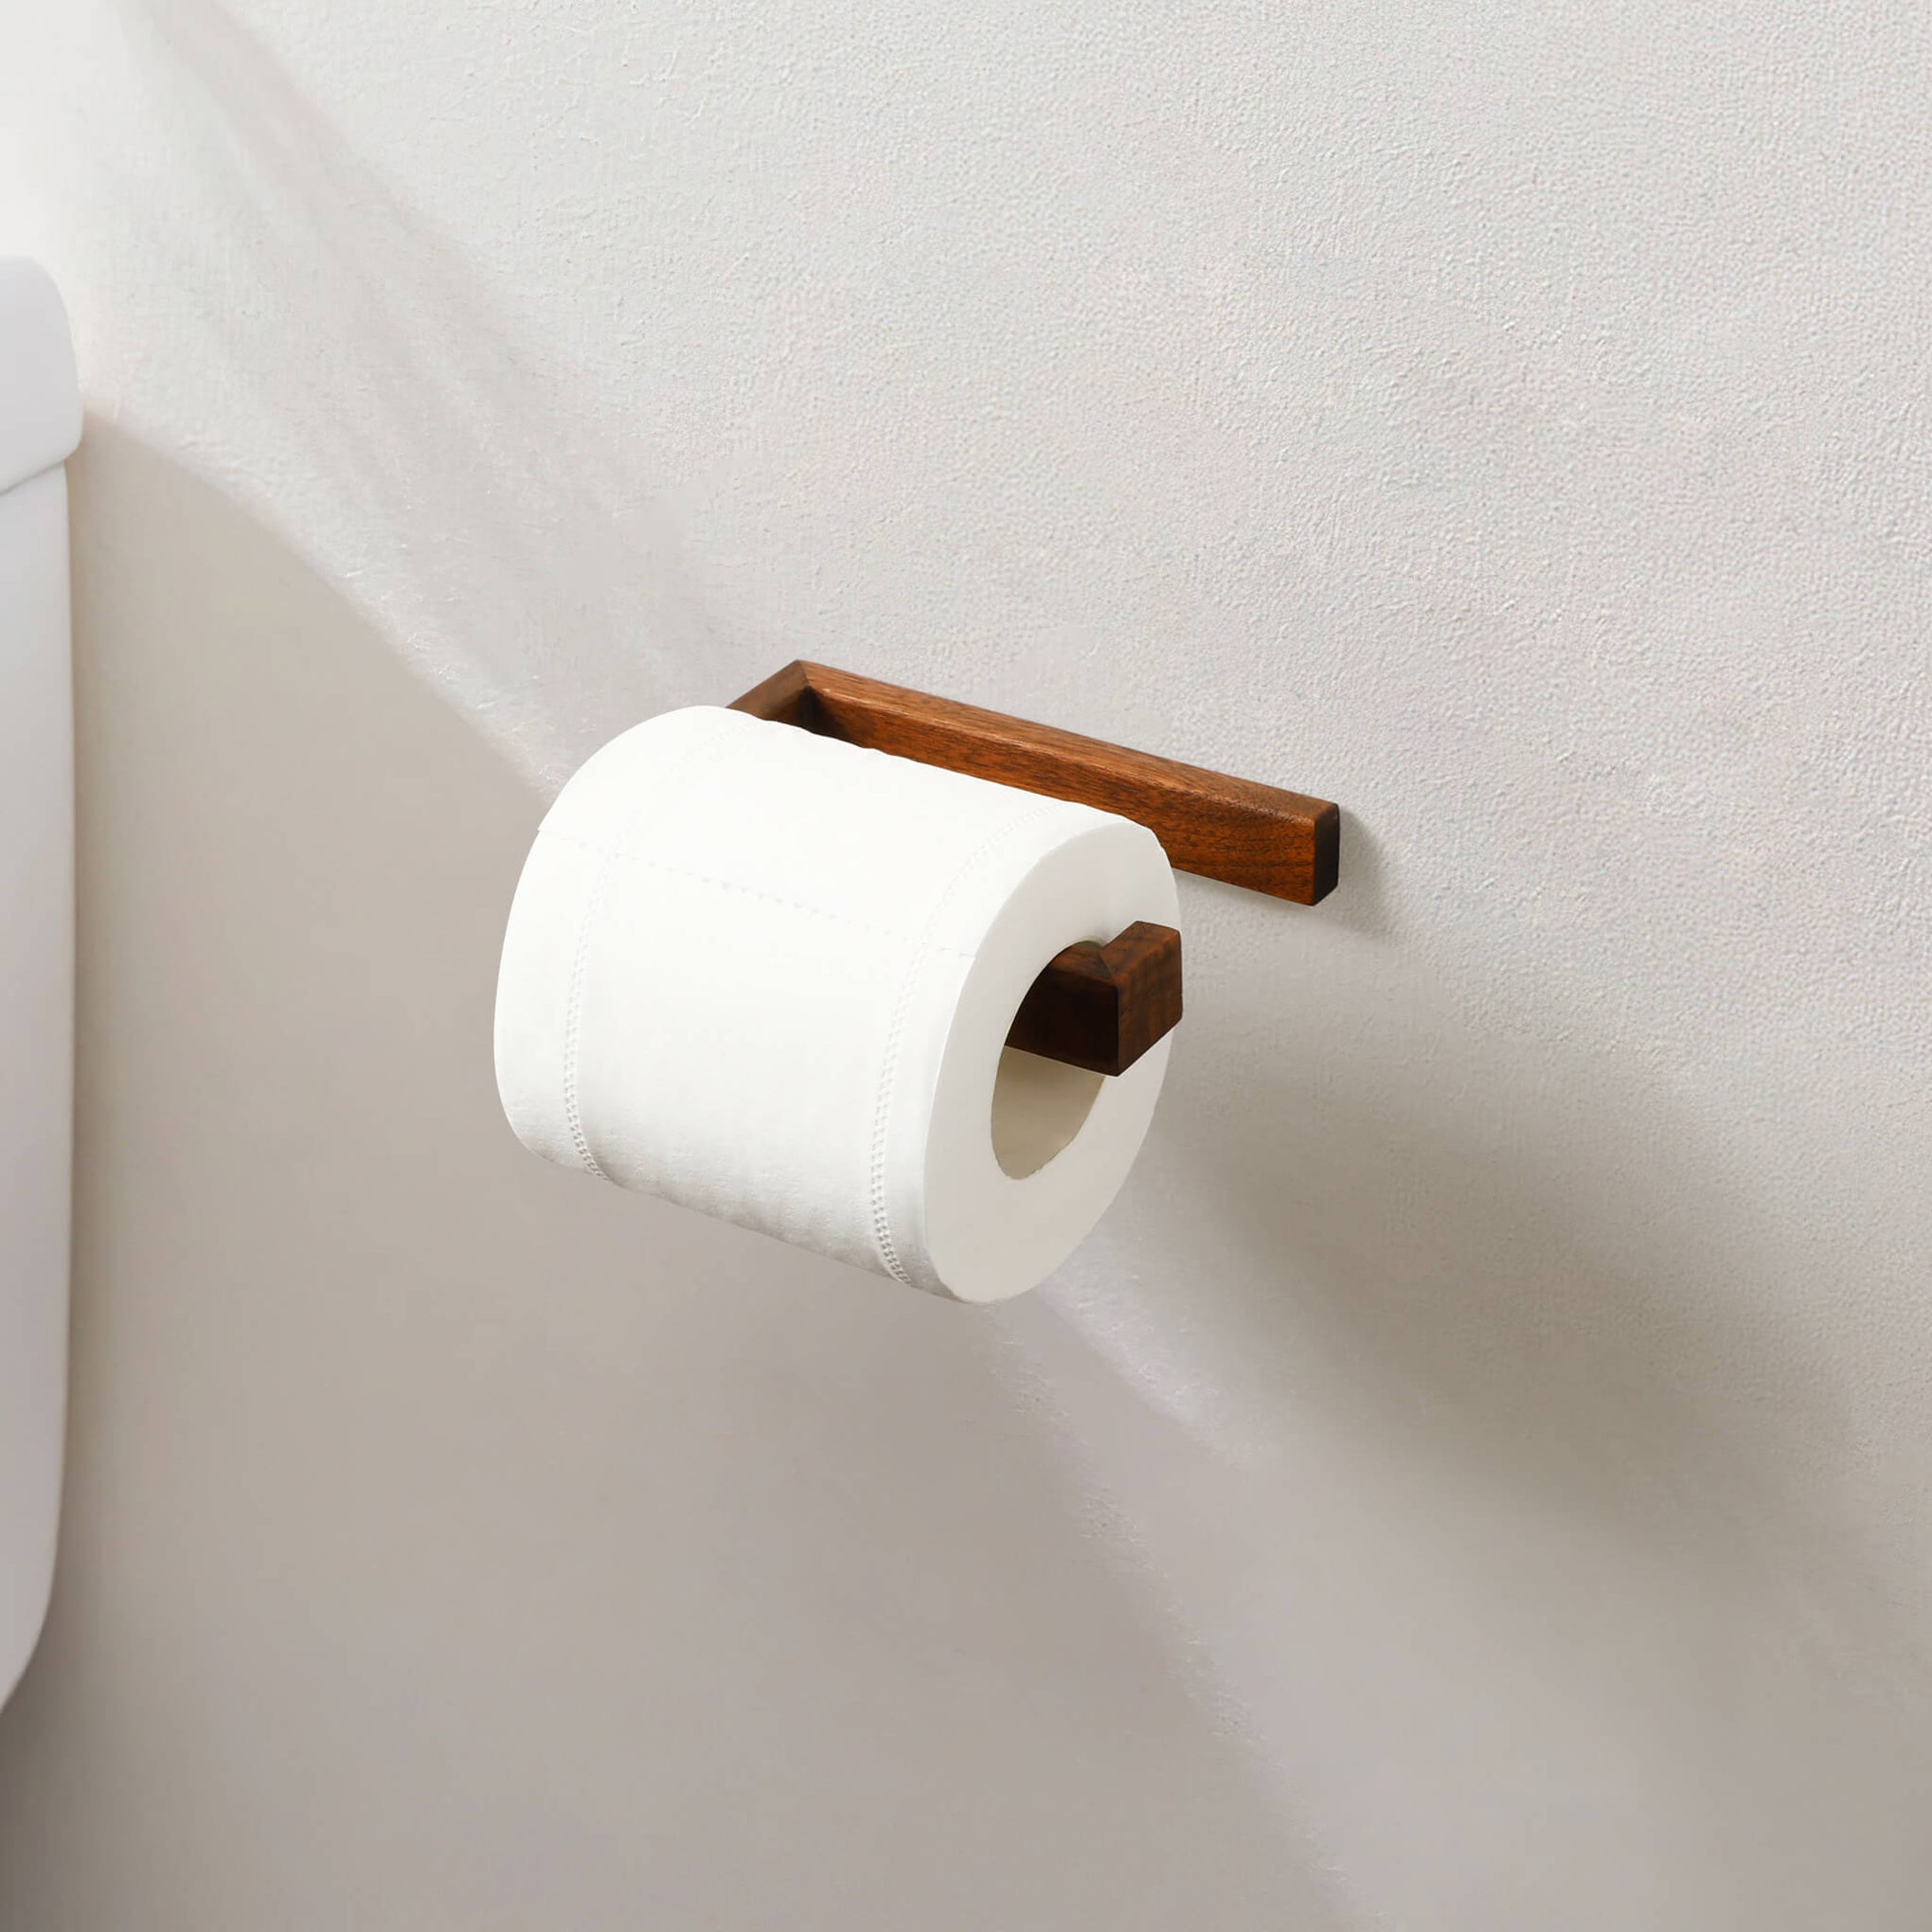 Minimalist Farmhouse White Toilet Paper Holder to Modern Bathroom